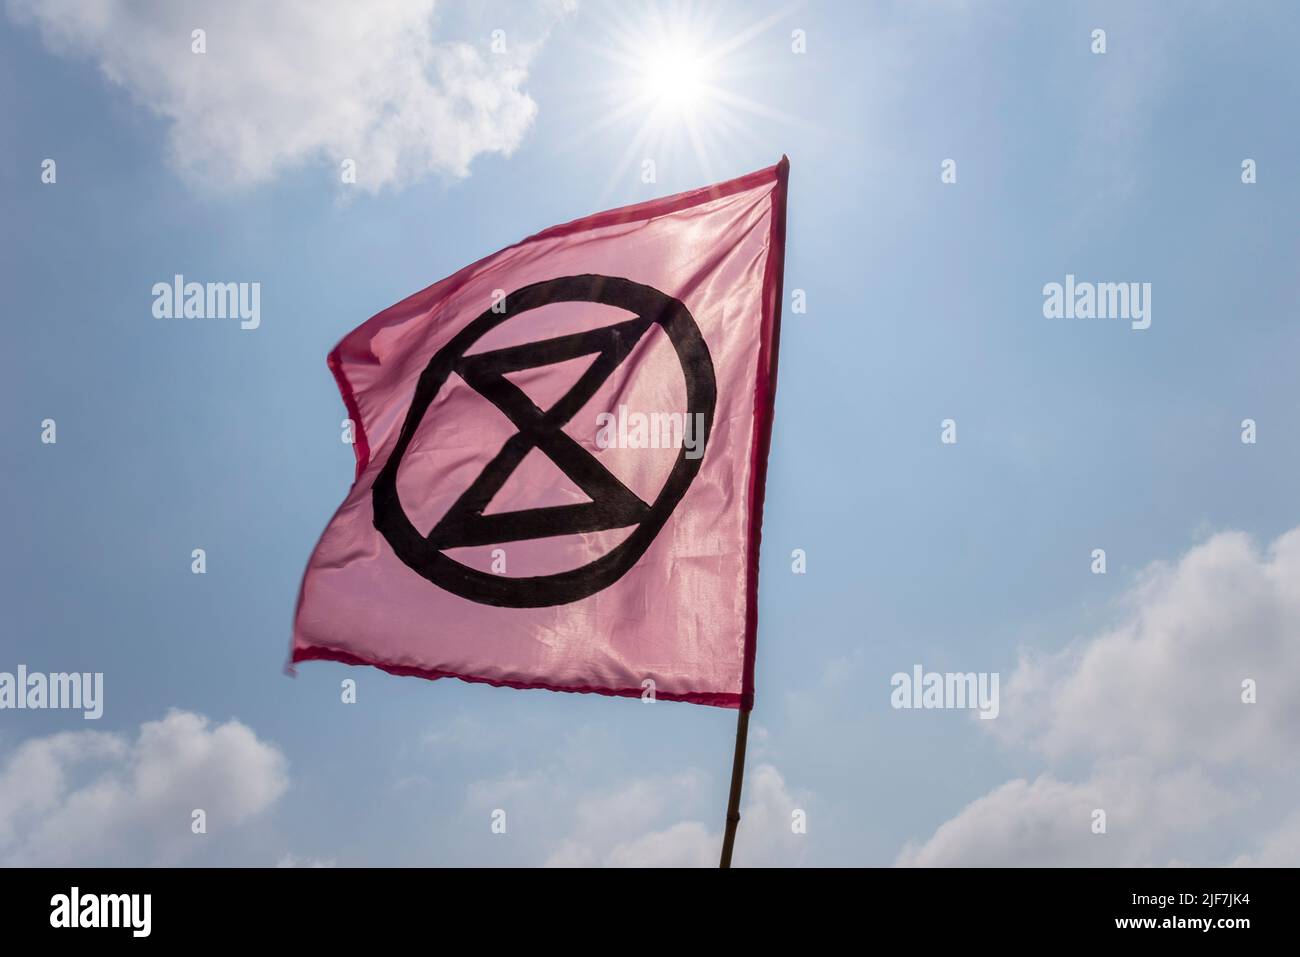 Extinción Bandera de Rebelión, con símbolo de reloj de arena, bajo un sol brillante. Calentamiento global, activismo por el cambio climático. Voló durante la protesta de aguas residuales en Southend Foto de stock